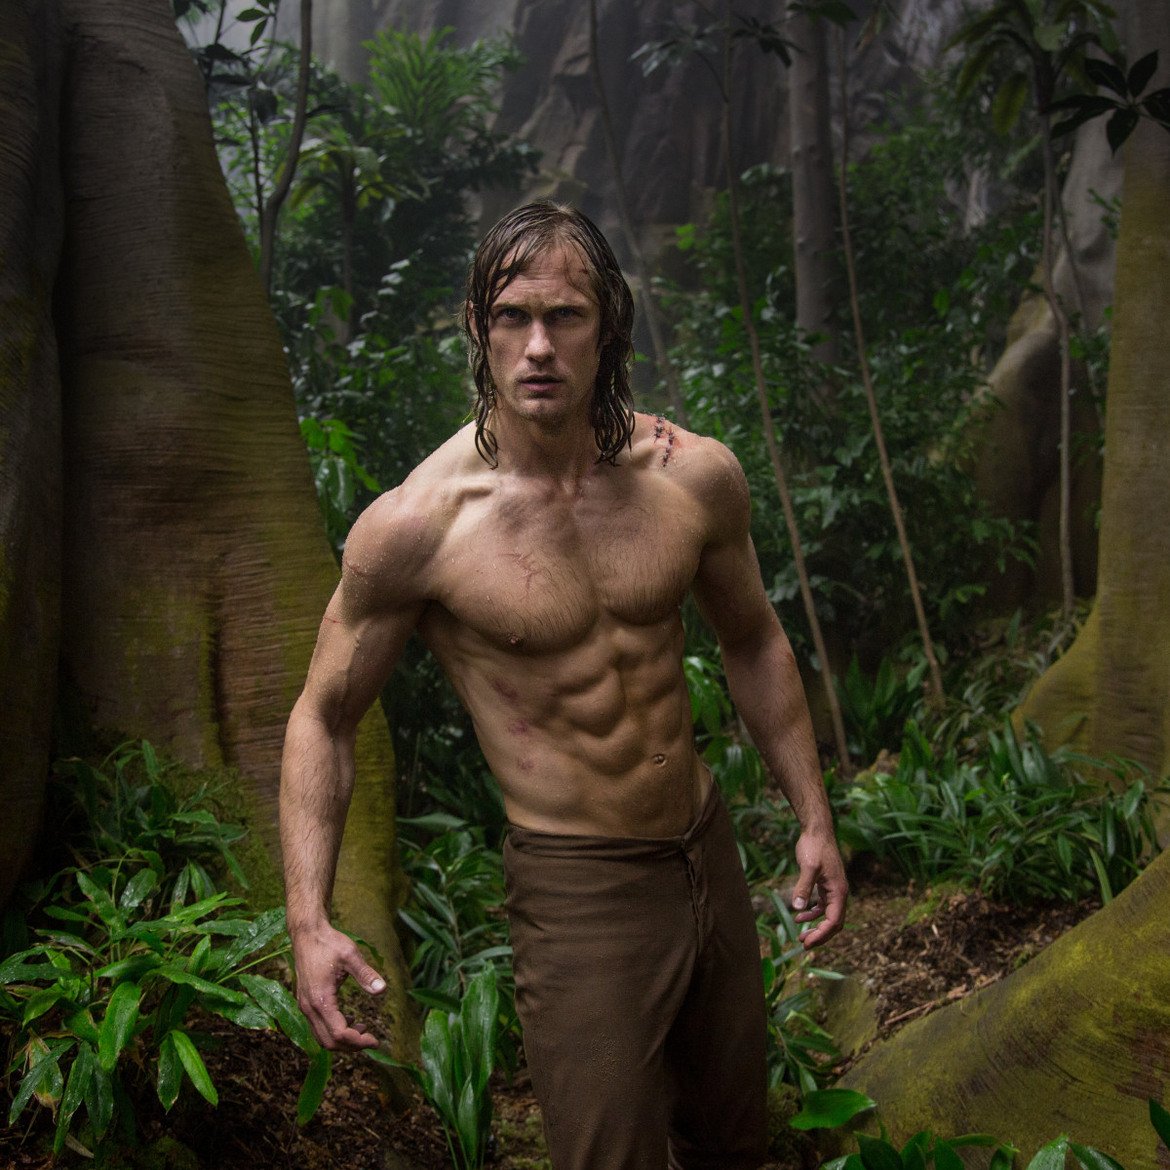 Александър Скарсгард - Легендата за Тарзан (The Legend of Tarzan, 2016) 

Когато Скарсгард приема ролята във филма, всички знаят, че актьорската подготовка няма да се размине с тренировки и хранителен режим. Никой обаче не очаква, че 194-сантиметровият швед ще стигне до толкова сериозна отдаденост на тялото си. Треньорът му дори казва, че се е налагало да го принуждава да си почива, за да не се контузи при извайването на широкия гръб и изрязания корем.